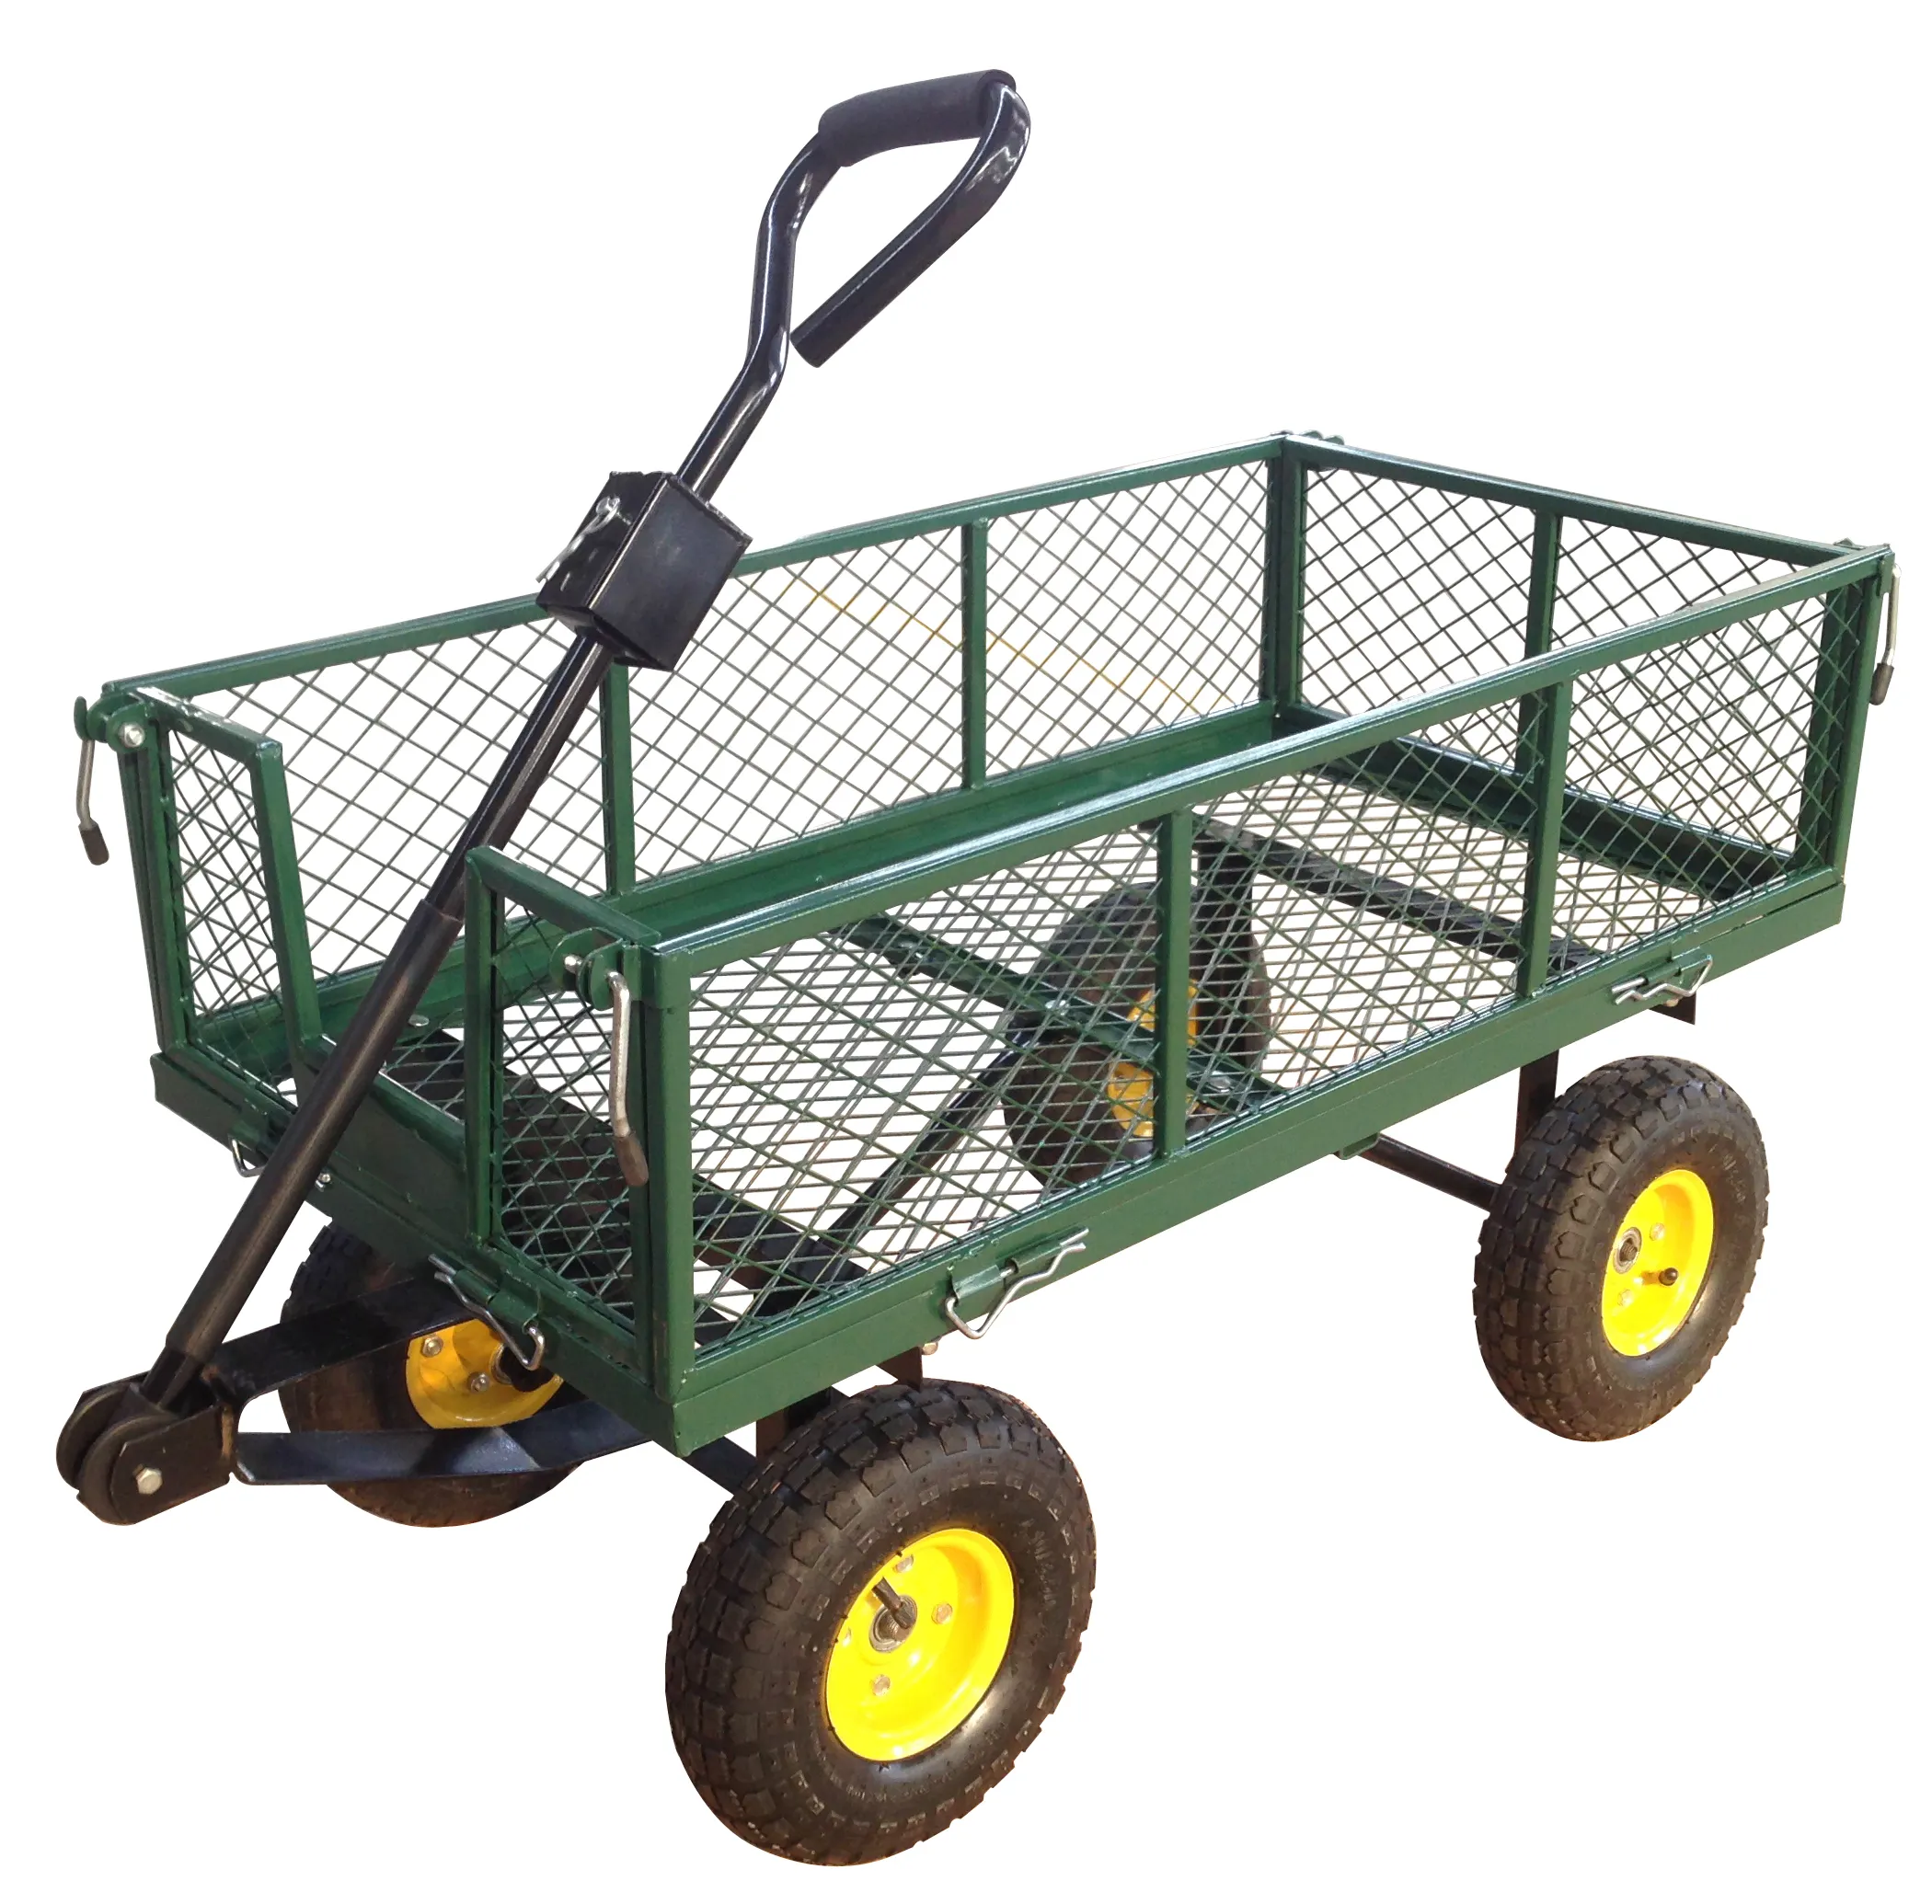 Malha de jardim de aço verde, carrinho de gramado ao ar livre com lados removíveis, resistente capacidade de 400 libras